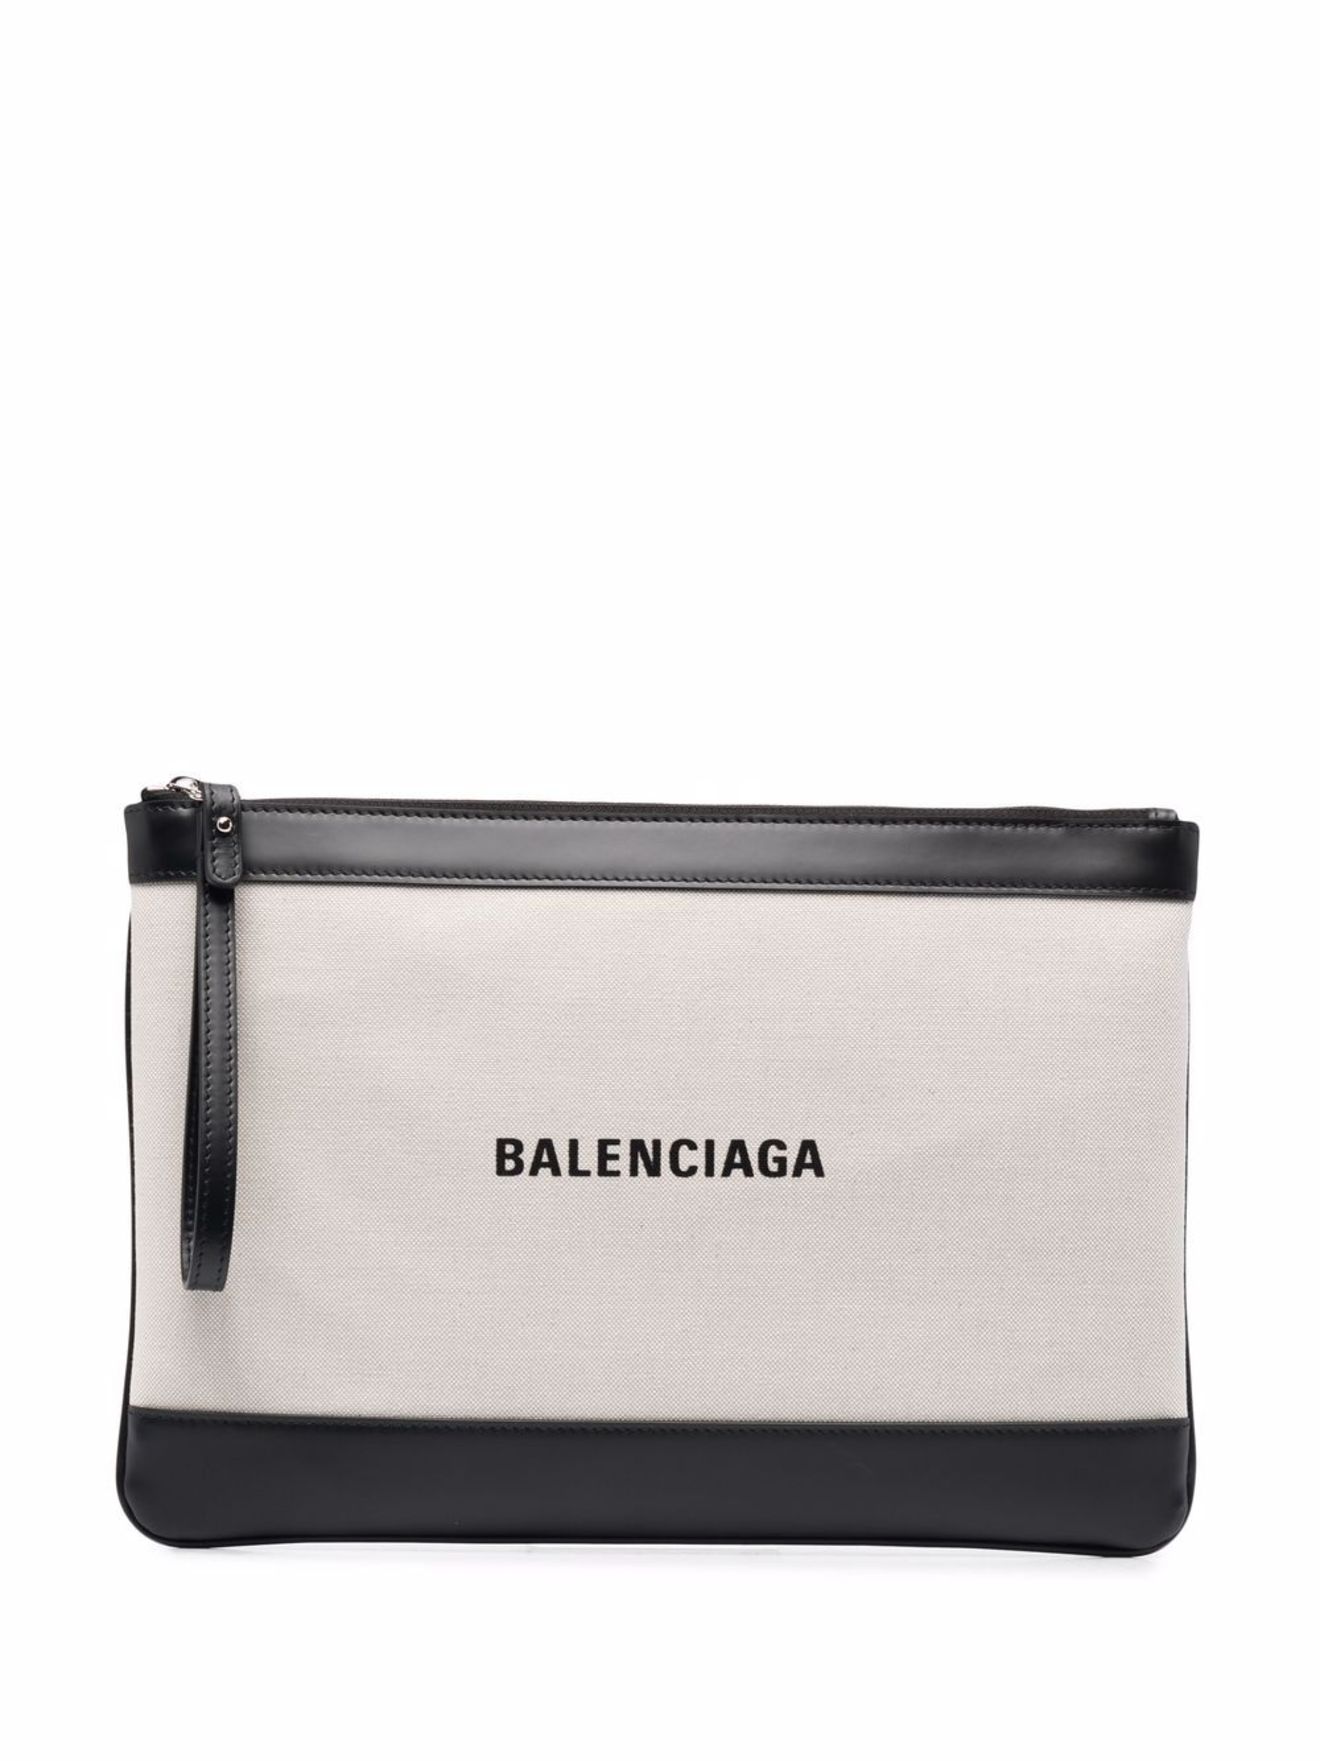 Balenciaga logo-print canvas bag neutrals | MODES